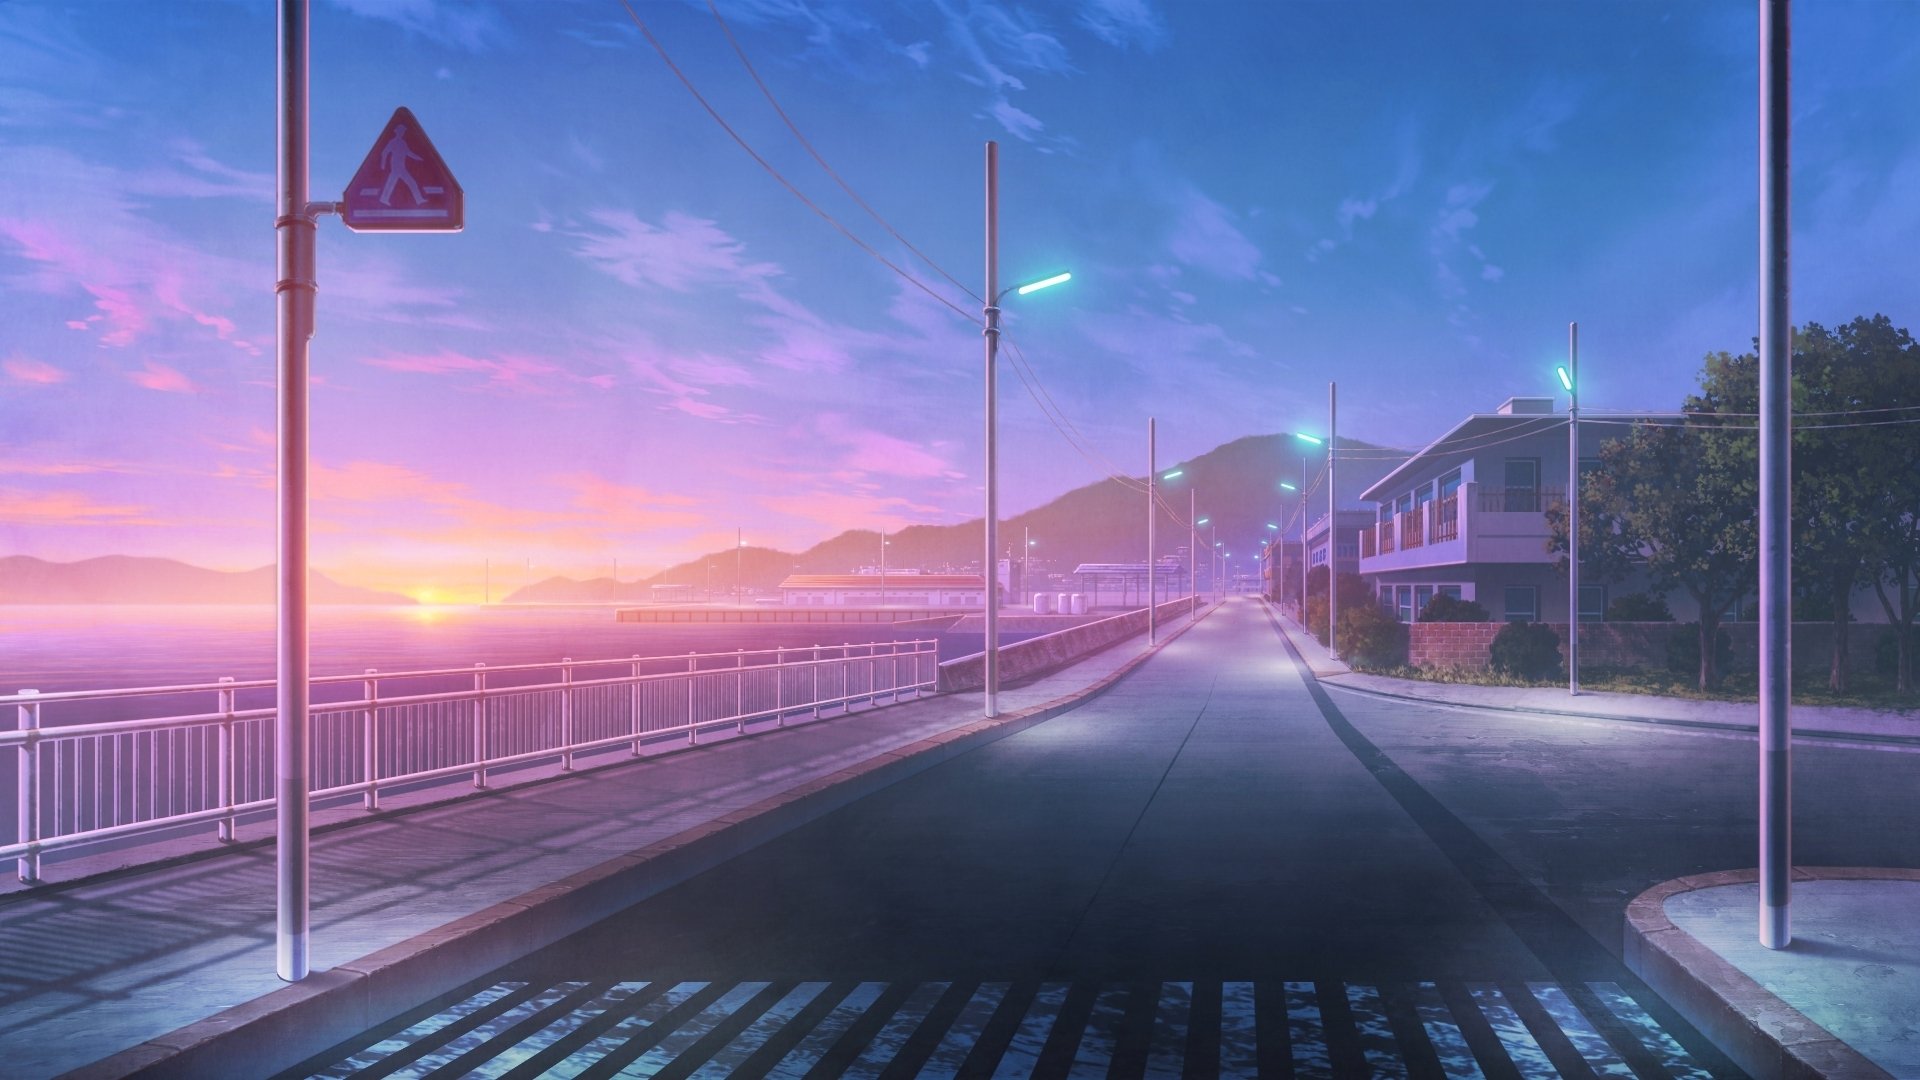 Với phong cách anime độc đáo, những con đường này tràn đầy sức sống và màu sắc rực rỡ, tạo nên một không gian đầy ma mị và lãng mạn. Nếu bạn yêu thích phong cách anime, chắc chắn rằng bạn sẽ cảm thấy thú vị và hào hứng khi đi đến đây.